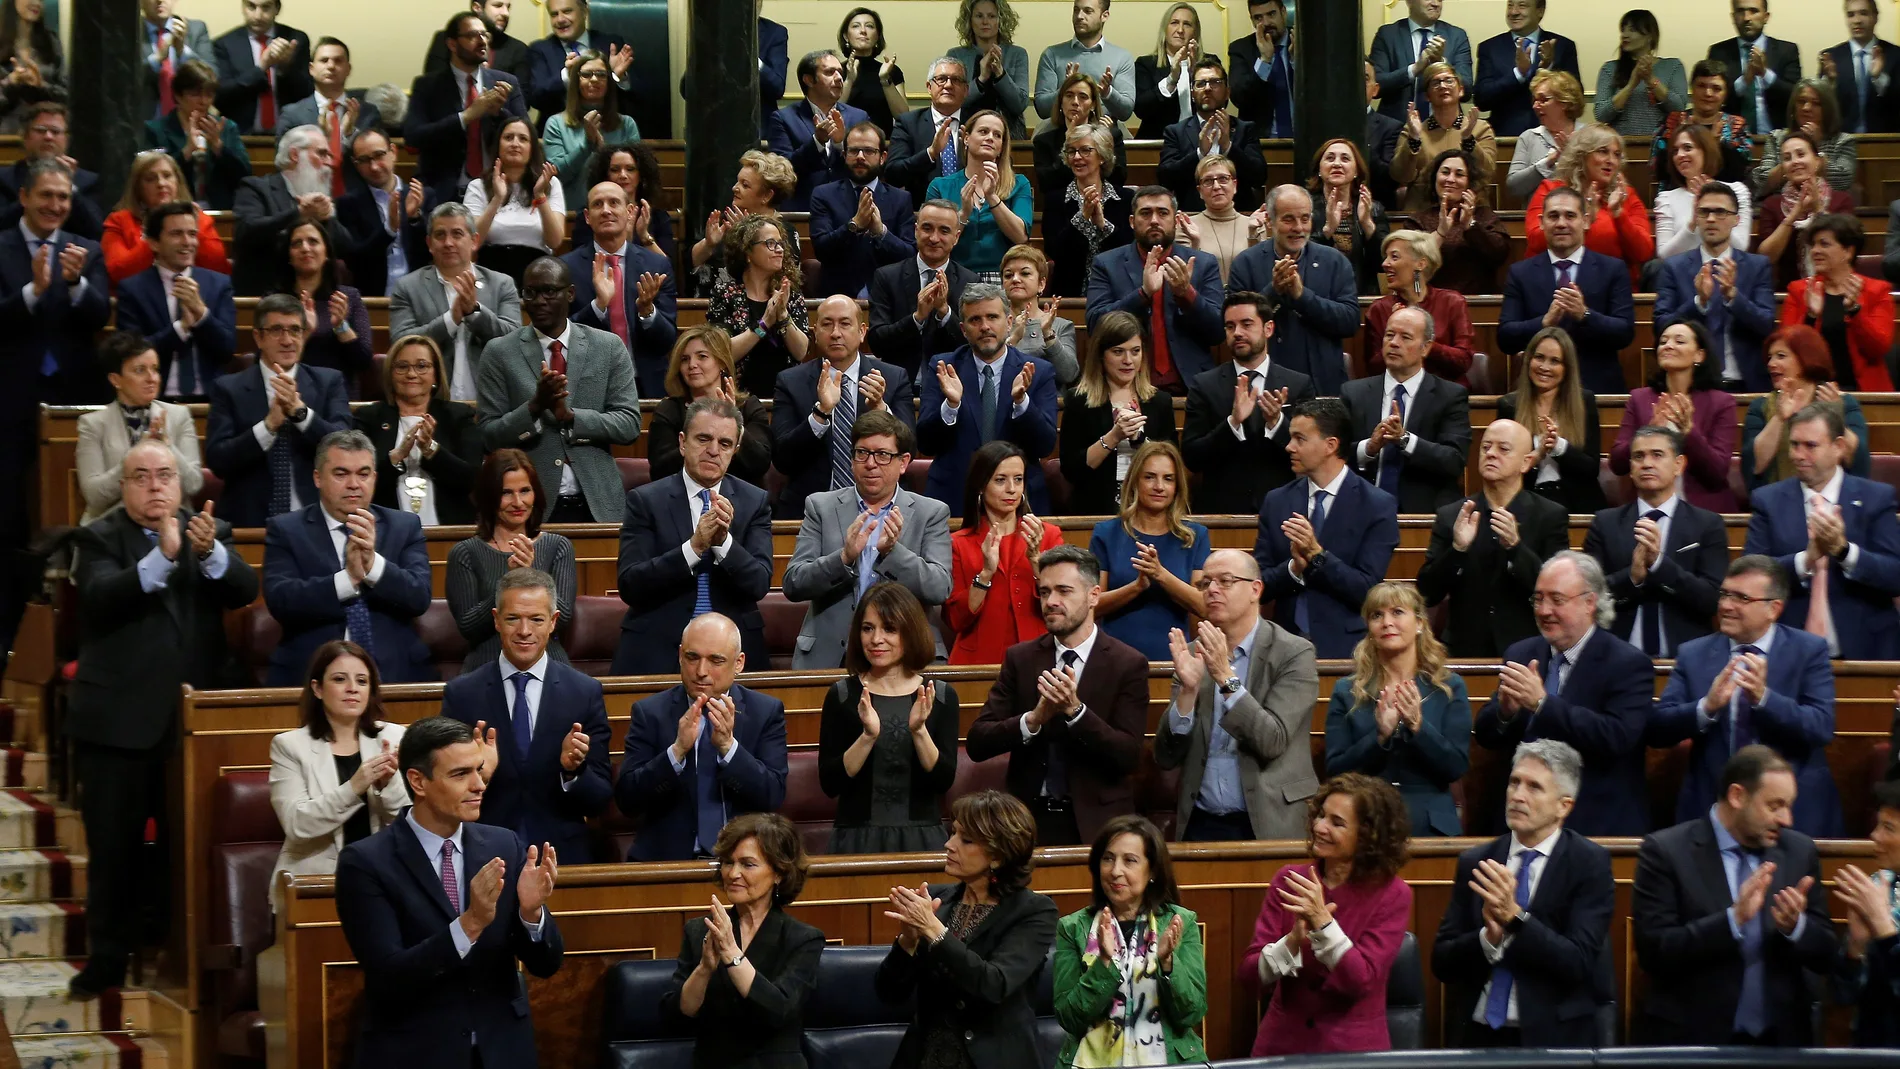 El candidato a la Presidencia del Gobierno, Pedro Sánchez (i), recibe el aplauso de sus compañeros de partido tras finalizar su discurso en el Congreso de los Diputados durante la primera jornada de la sesión de su investidura como presidente del Gobierno.